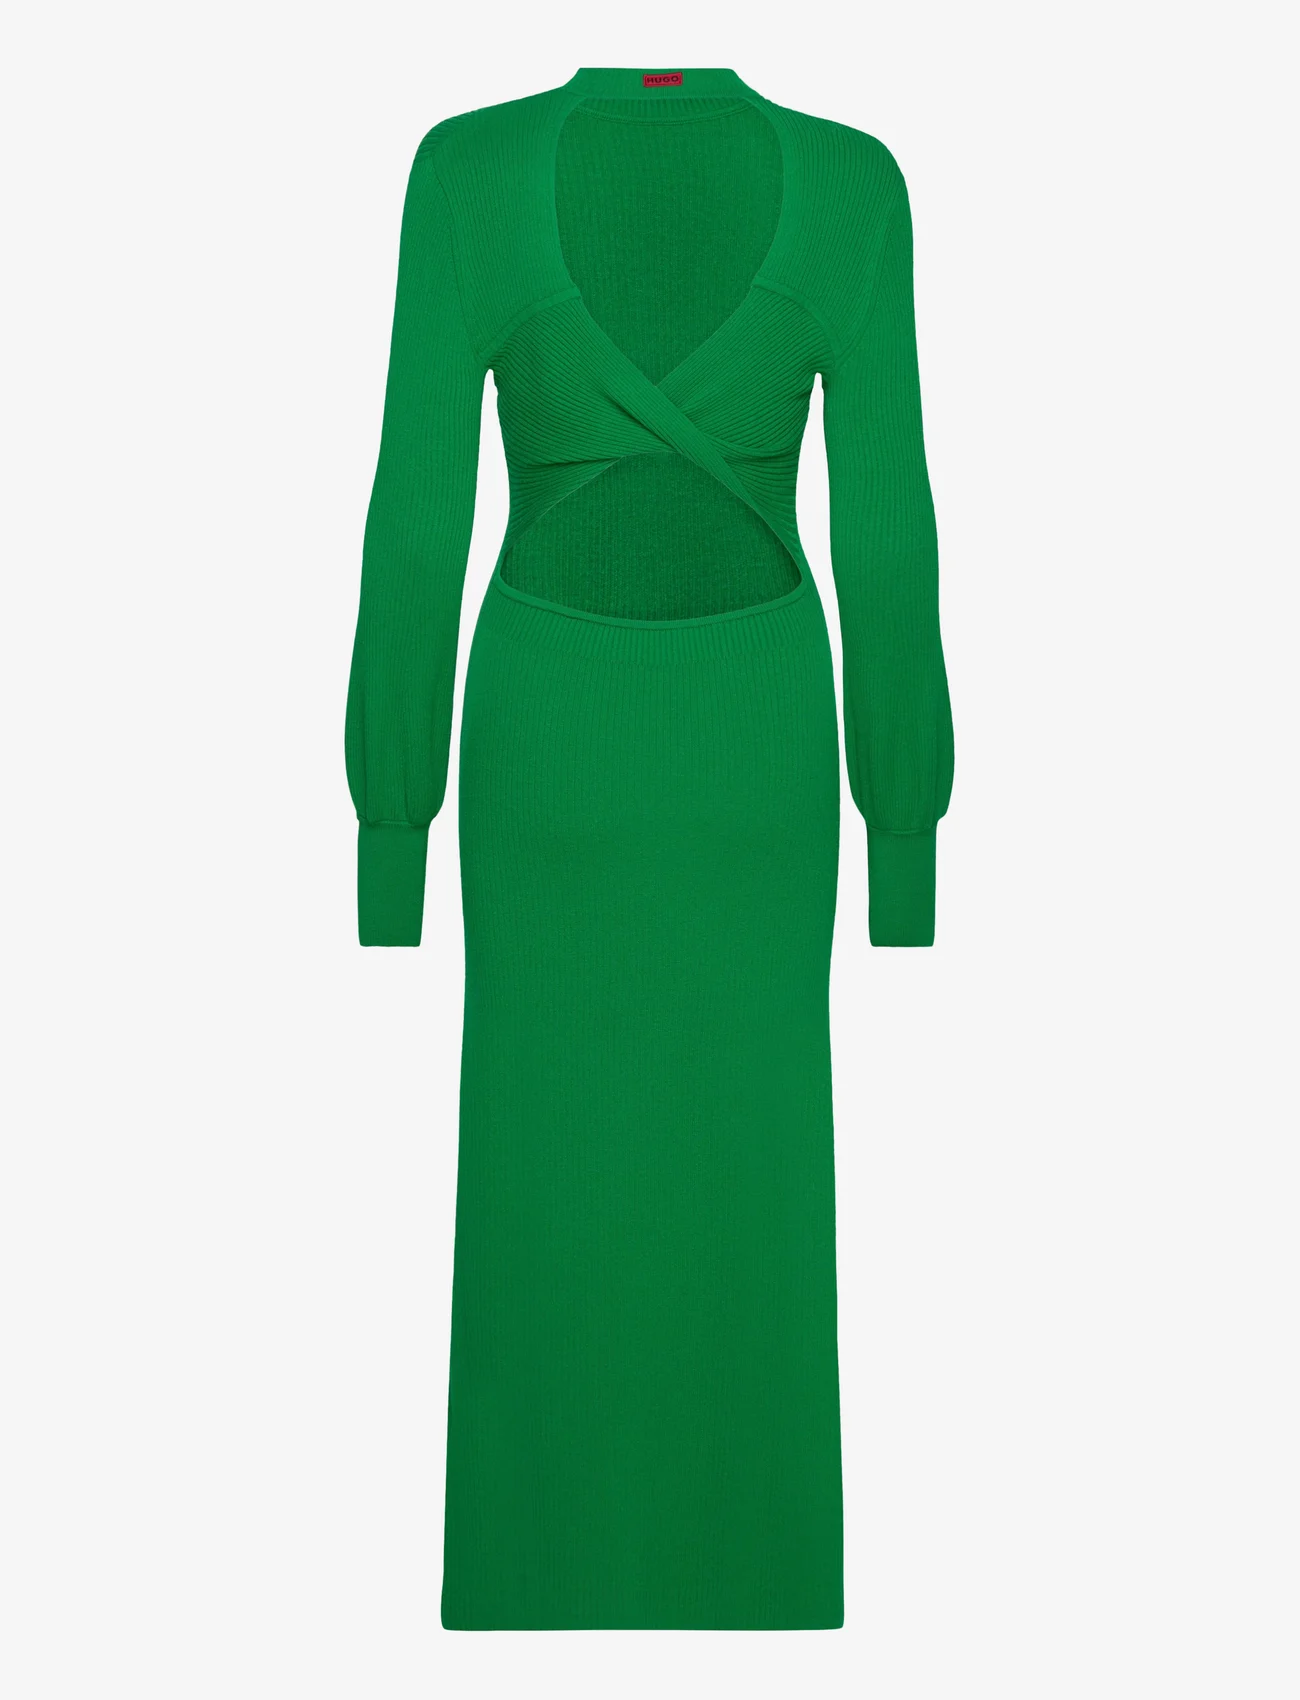 HUGO - Slopenny - stramme kjoler - medium green - 1